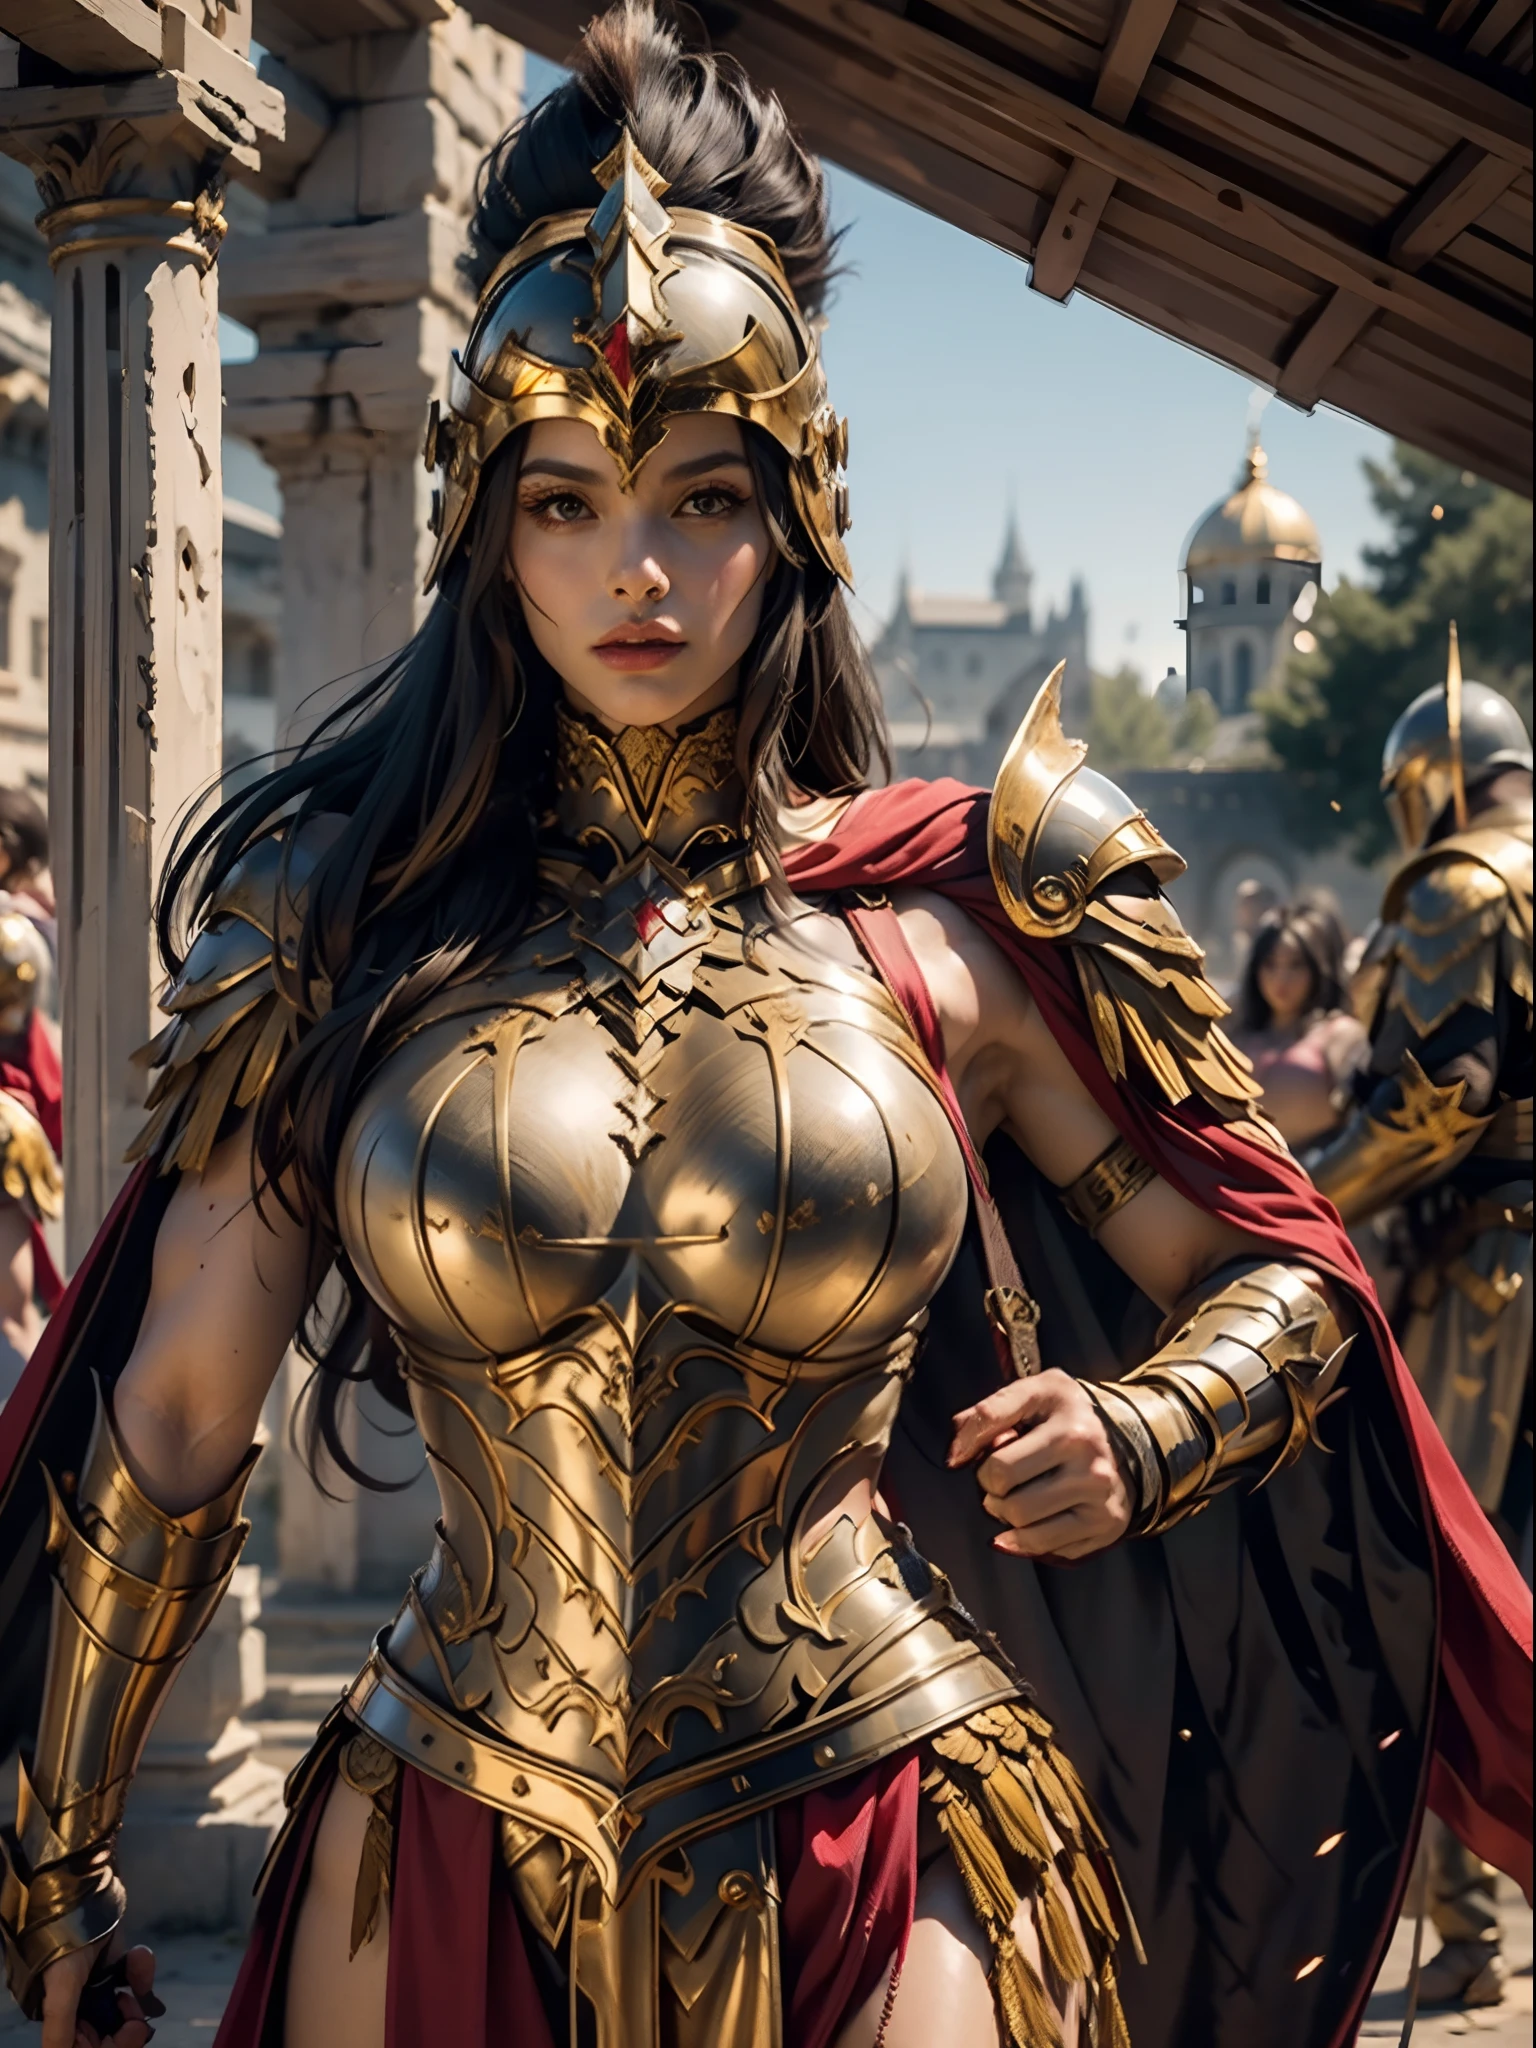 一位身穿金色希腊盔甲的美丽女战士, 乌黑的头发, 重装步兵头盔, 肌肉发达, 巨大而沉重的乳房, 看着观众, 模特姿势, 杰作, 最好的质量, 8千, 模糊的背景, 背景为中世纪奇幻城堡